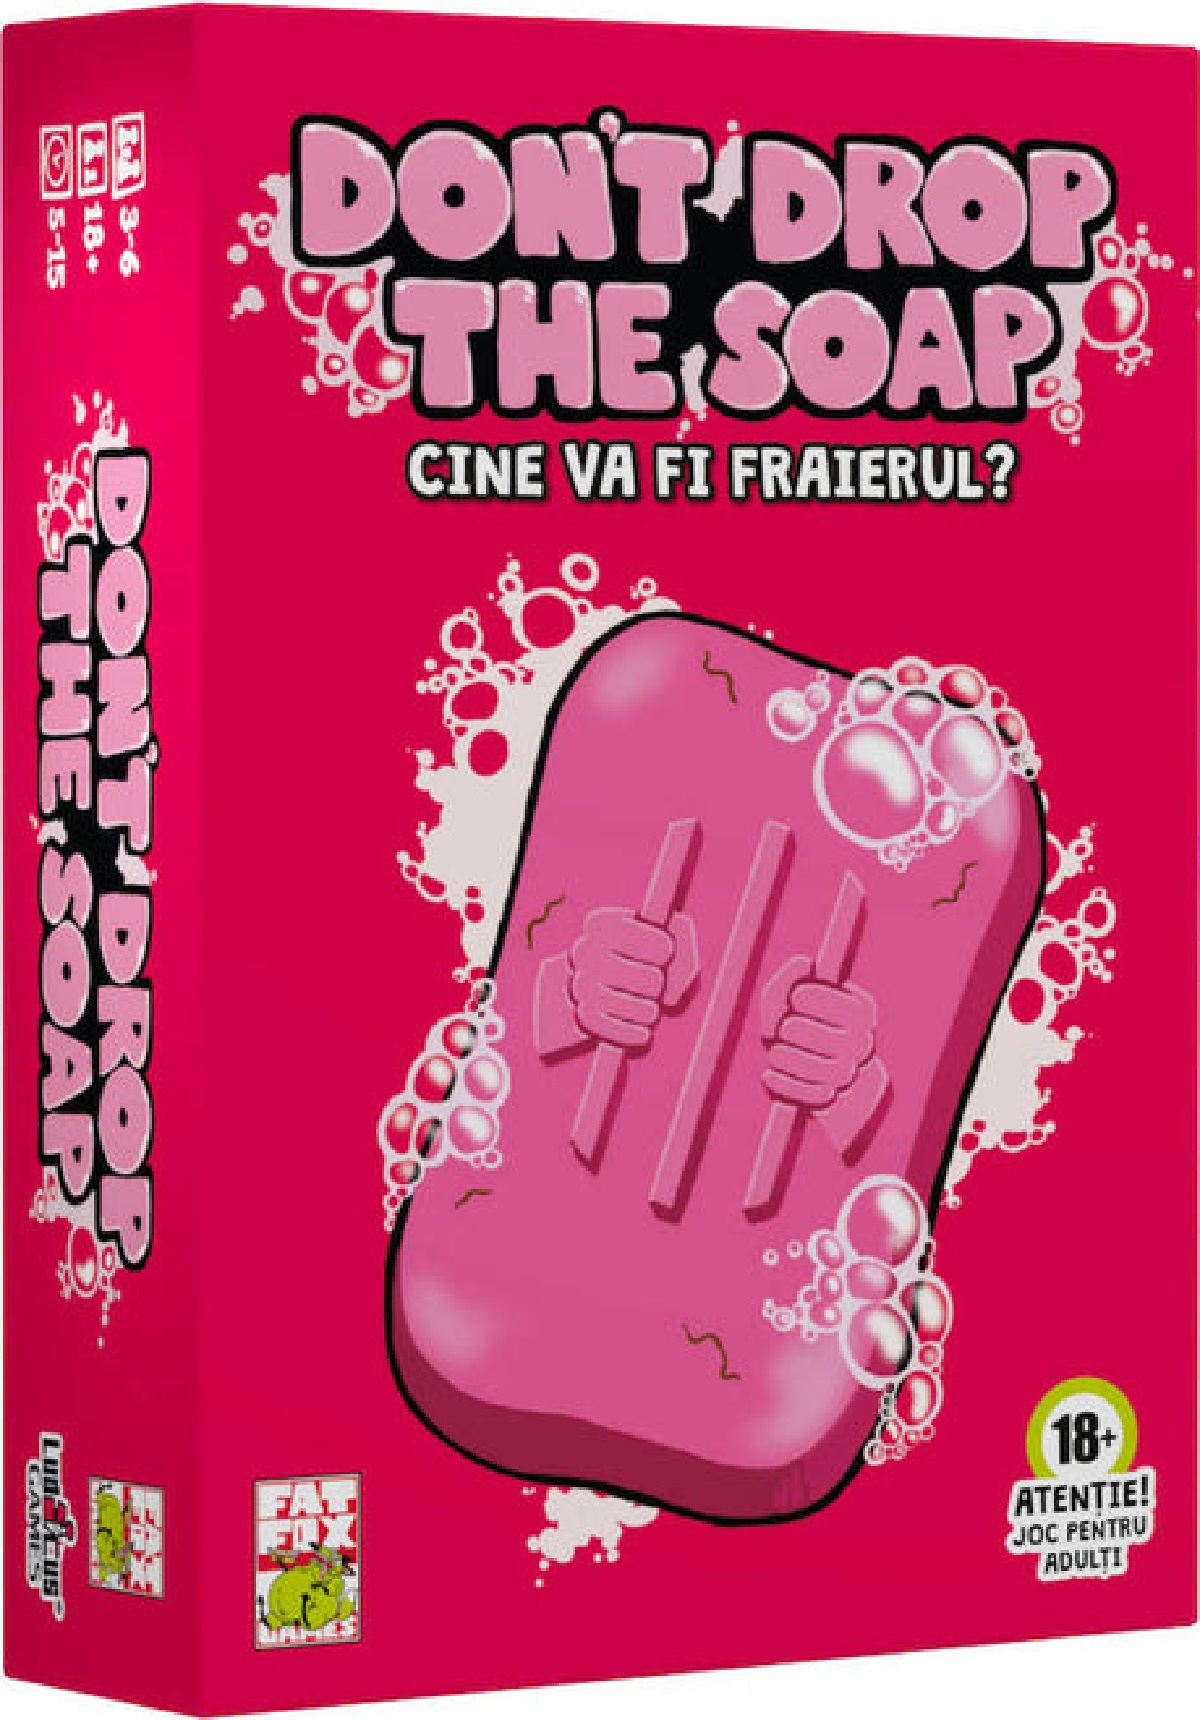 Joc adulti: Don't drop the soap. Cine va fi fraierul?